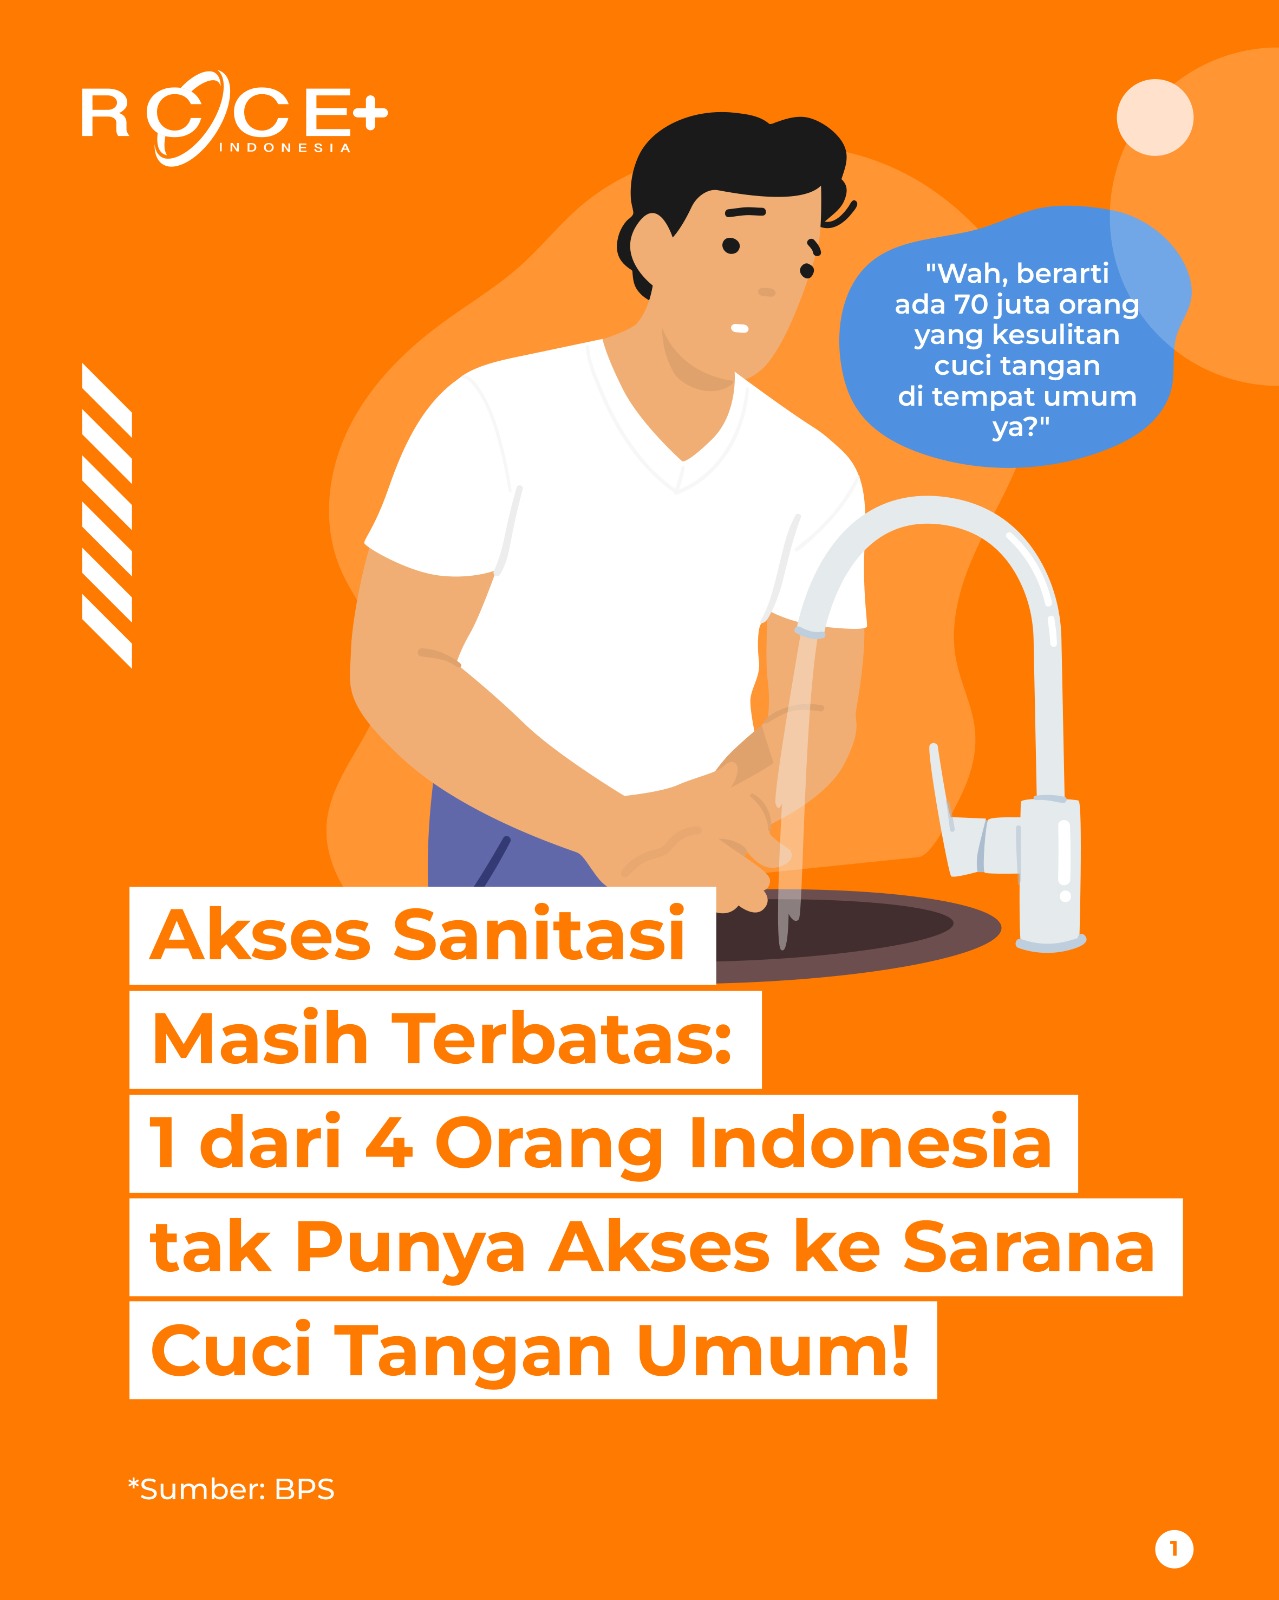 Akses Sanitasi Masih Terbatas: 1 dari 4 Orang Indonesia tak Punya Akses ke Sarana Cuci Tangan Umum!